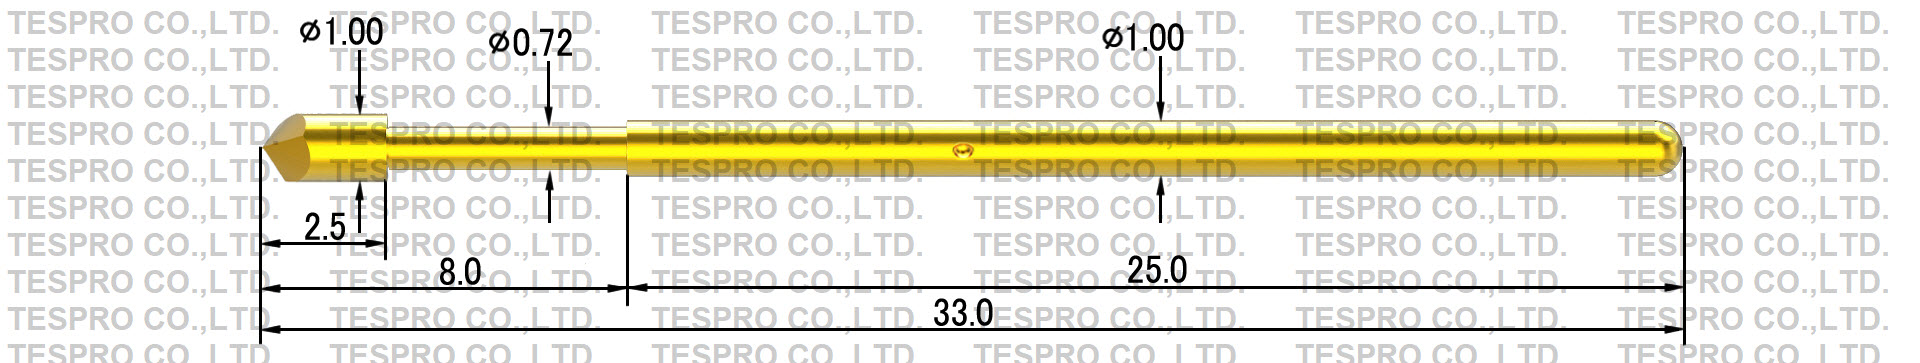 http://tespro-jp.com/product/tp1.0_tespro.jpg